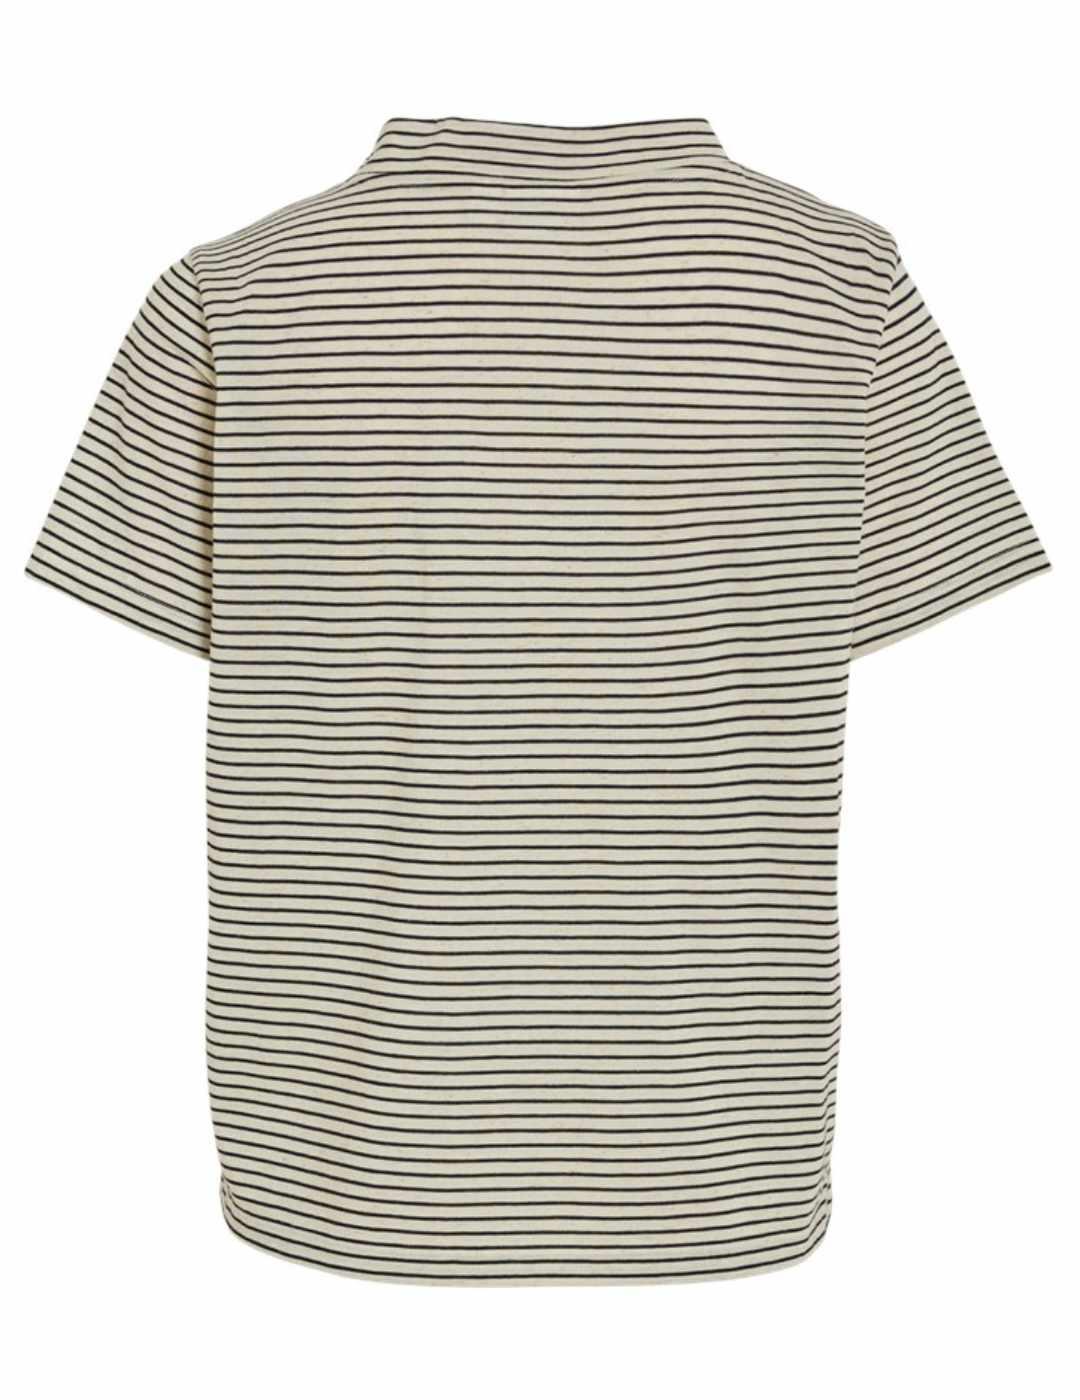 Camiseta Vila Nulla beige raya negro manga corta para mujer